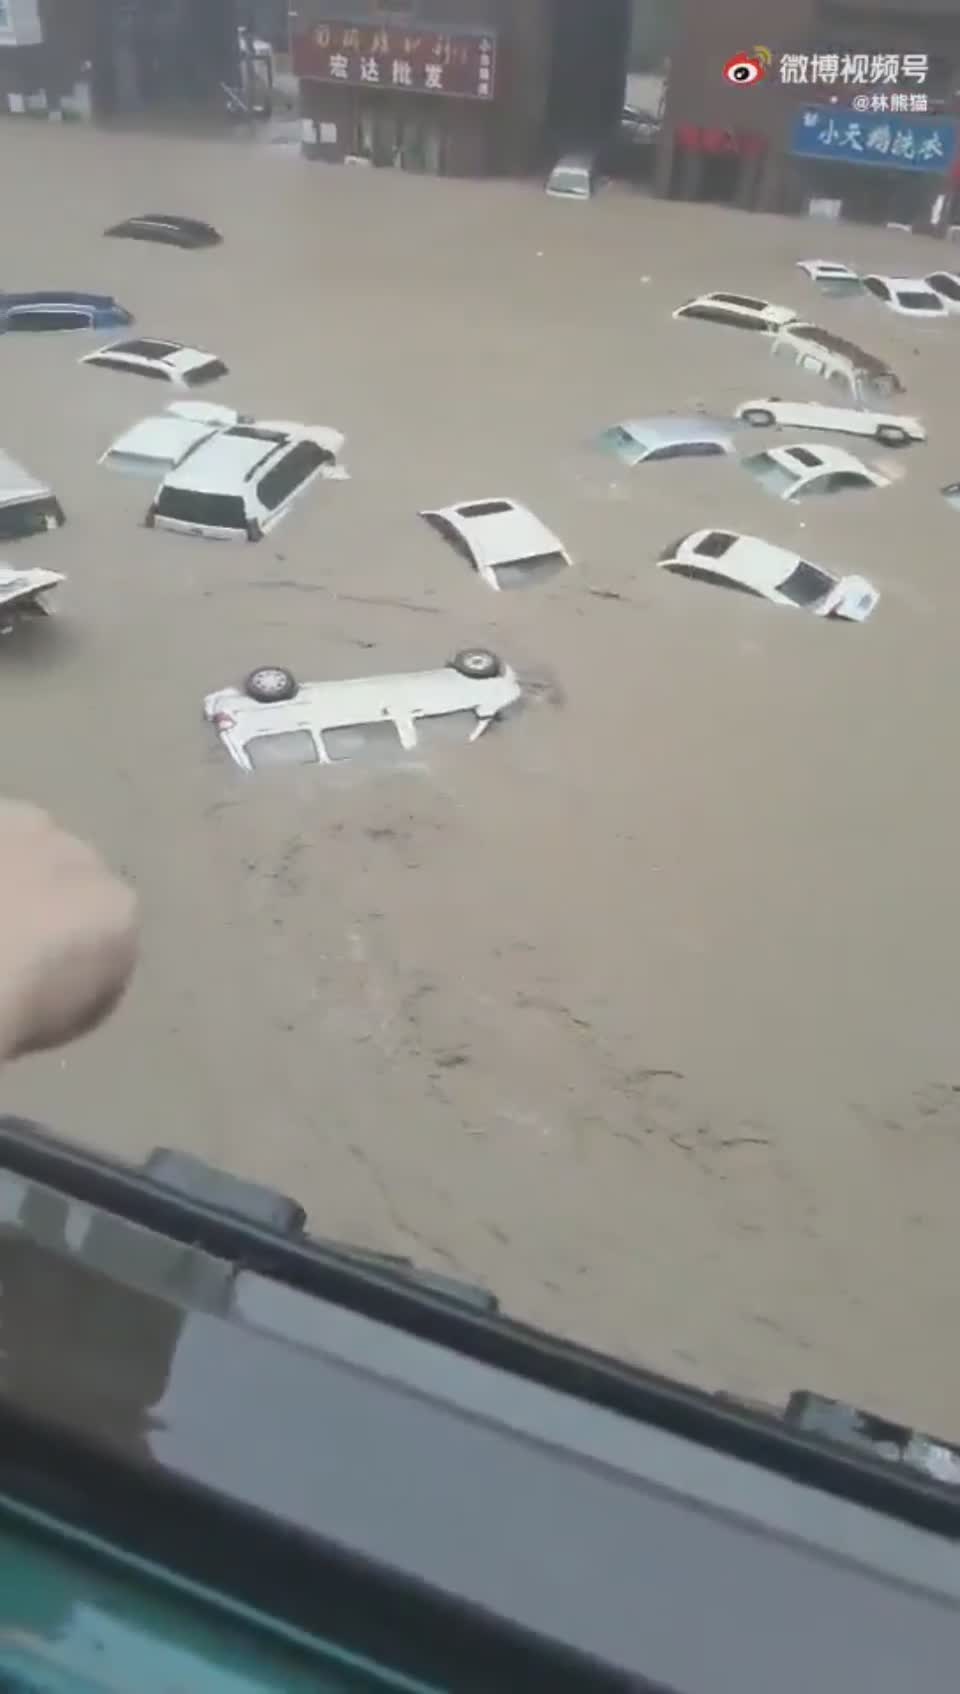 Les énormes inondations de Zhengzhou, 200mm de pluie en une heure (Chine)